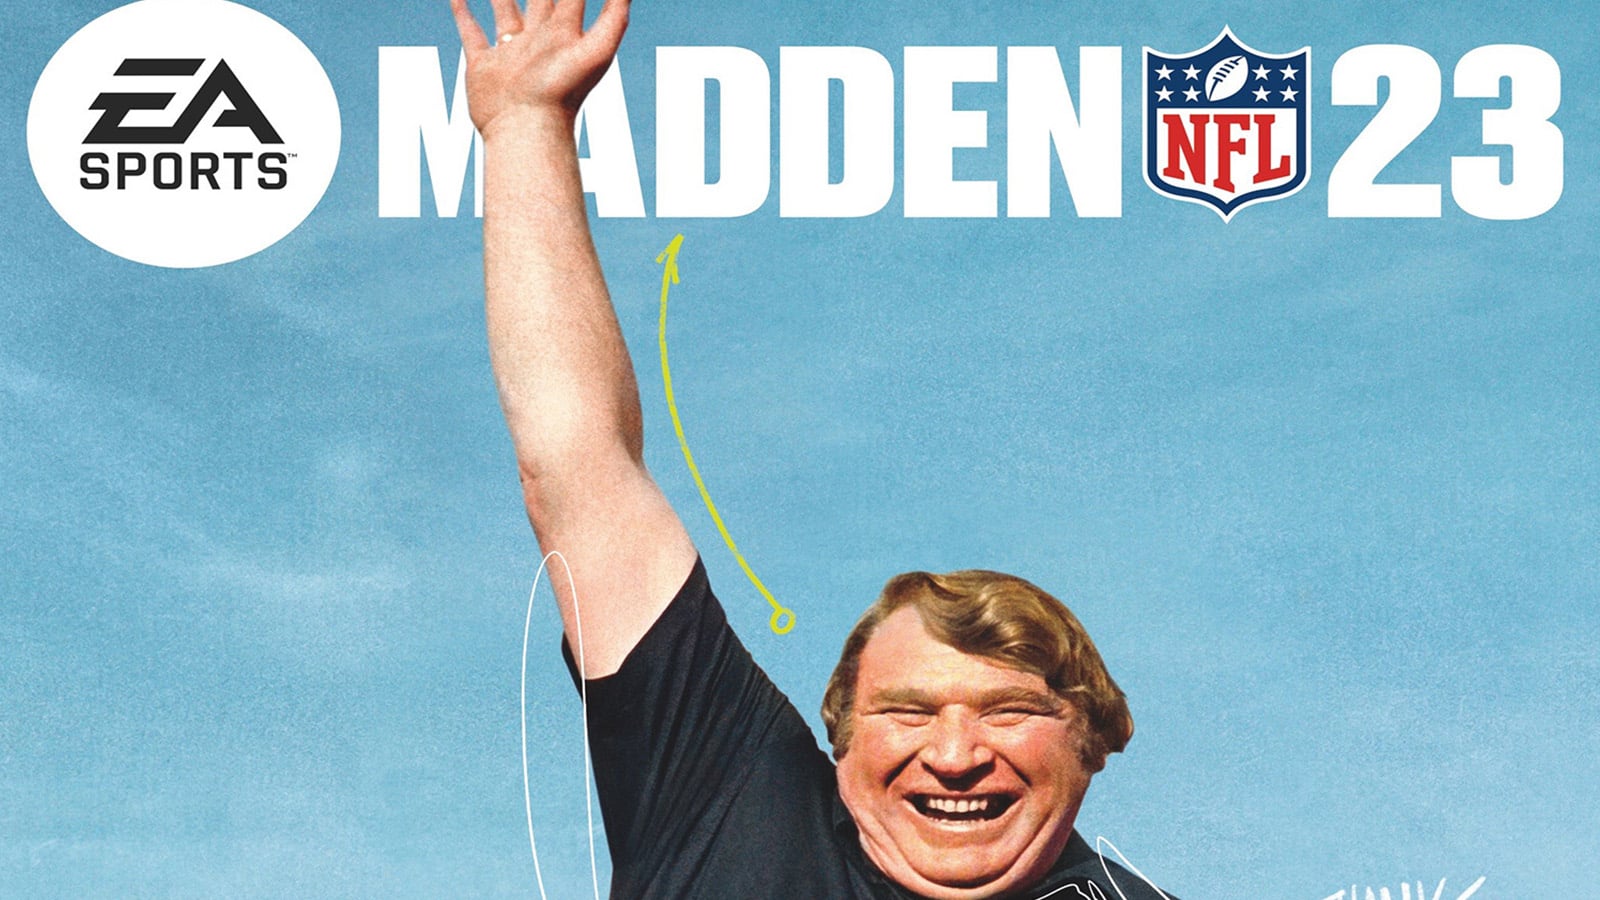 NFL legend John Madden revealed as Madden 23 cover star - Dexerto